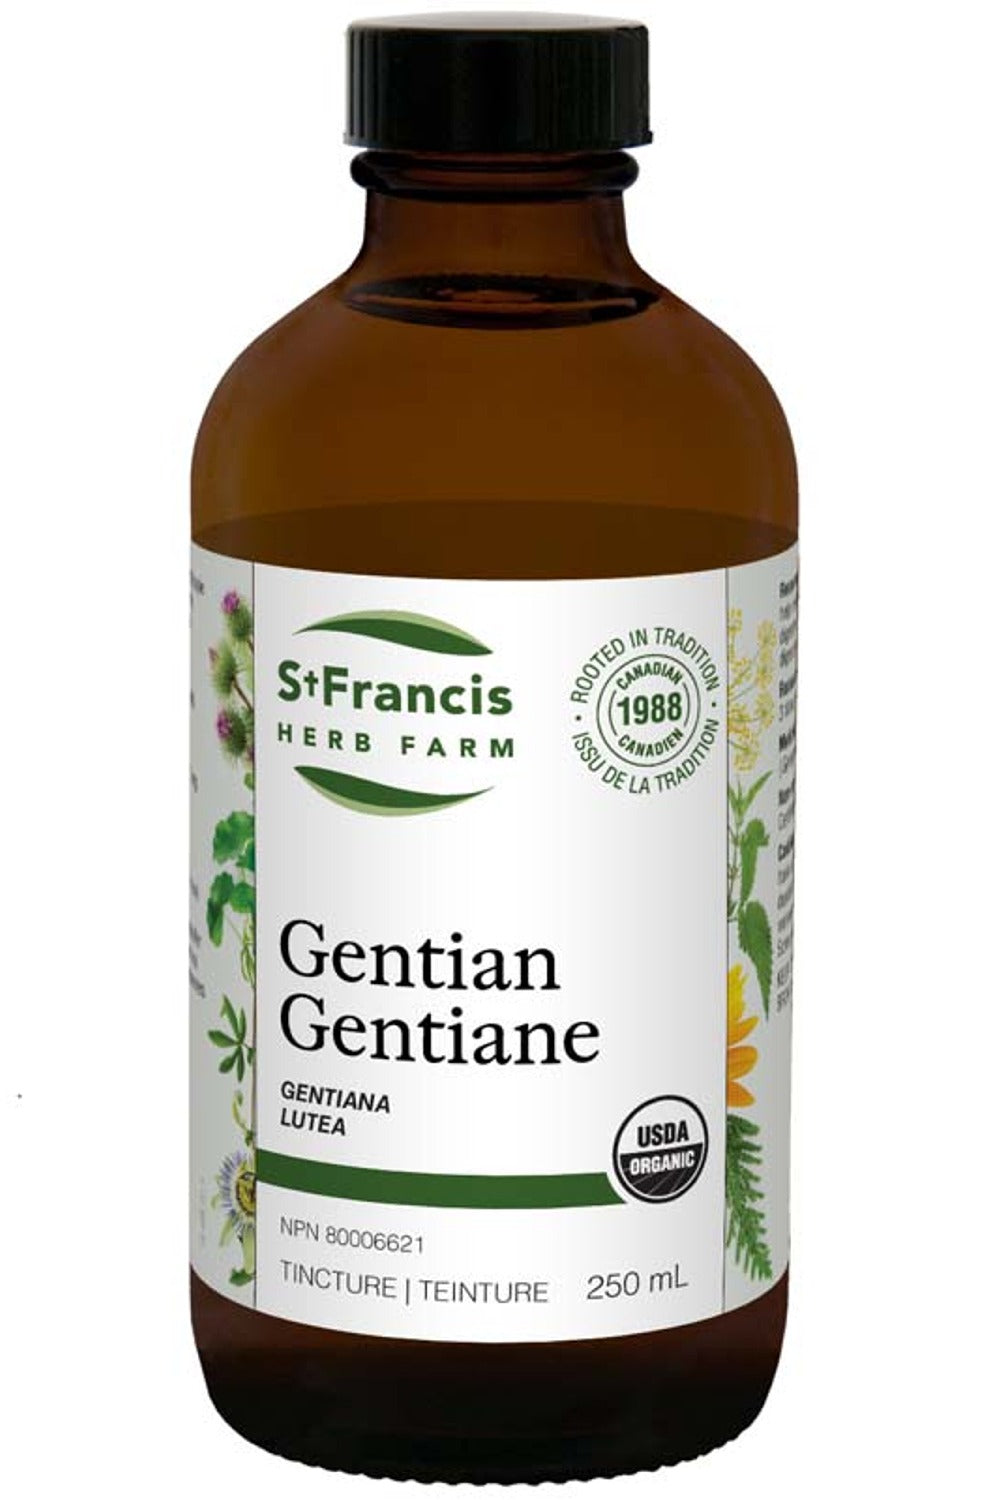 ST FRANCIS HERB FARM Gentian (250 ml)